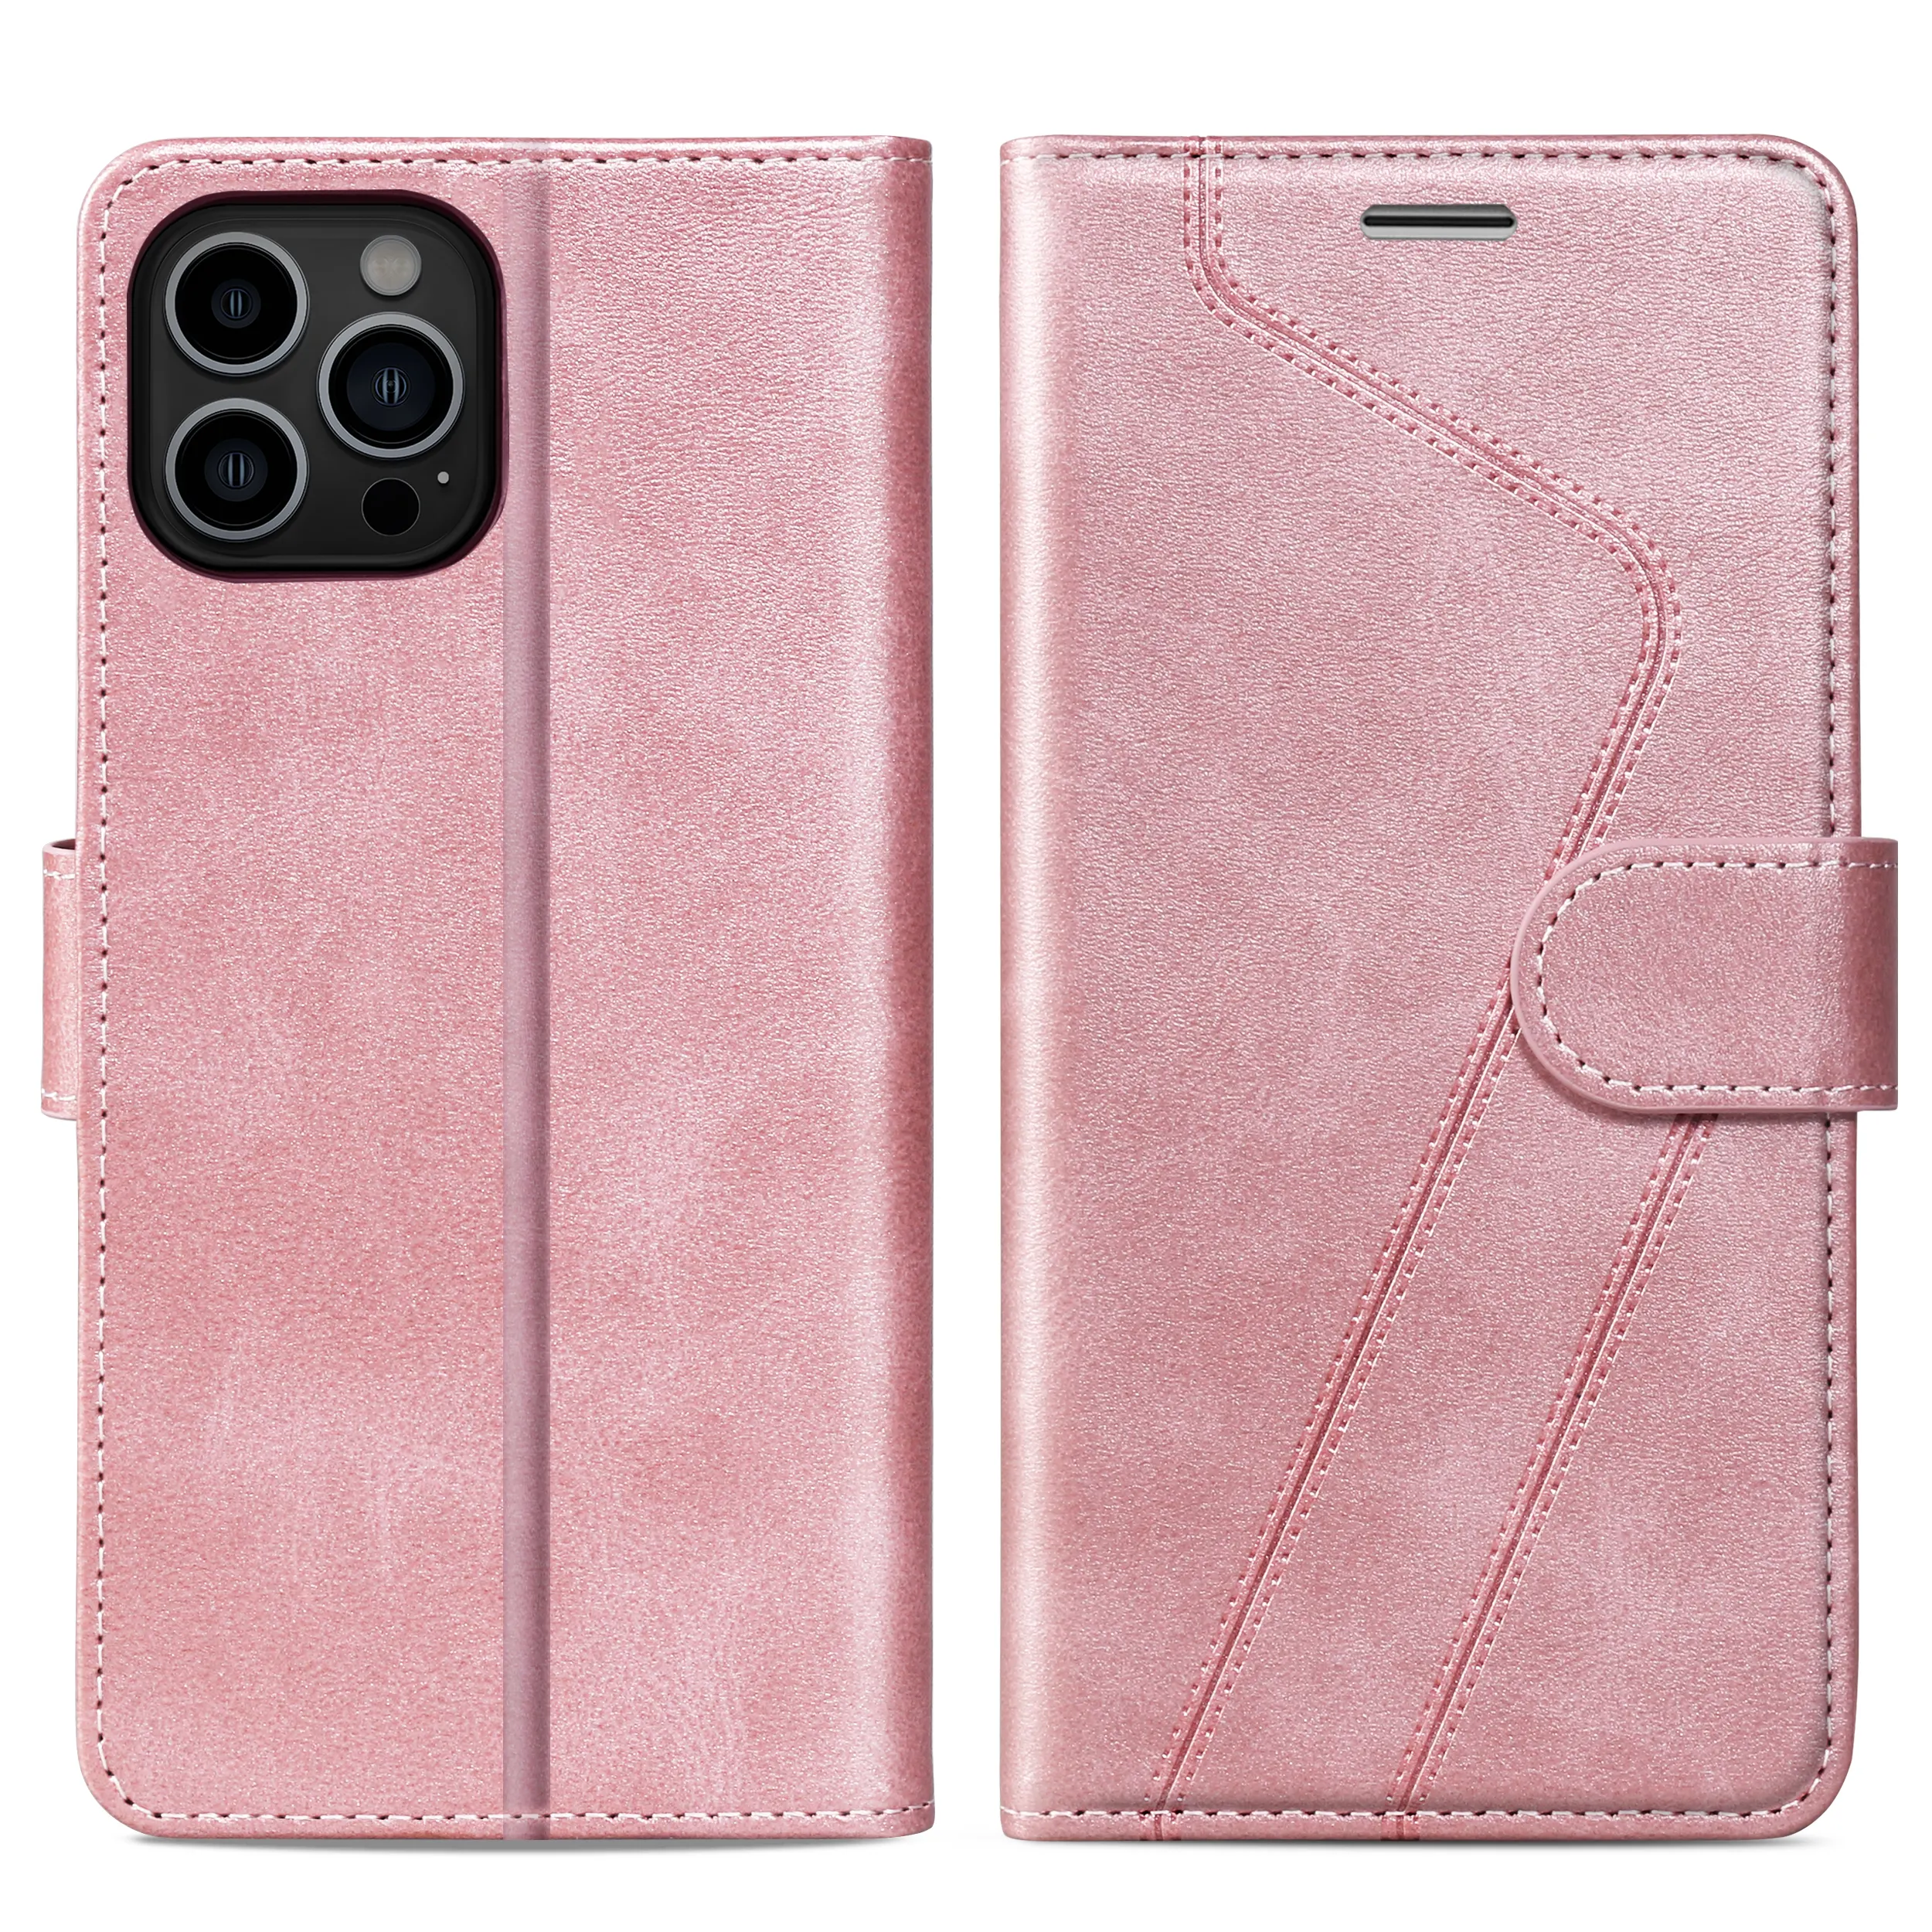 Couverture arrière souple de protection à la main de luxe couture Flip Cover Wallet Phone Case en cuir Girly Phone Case avec porte-cartes